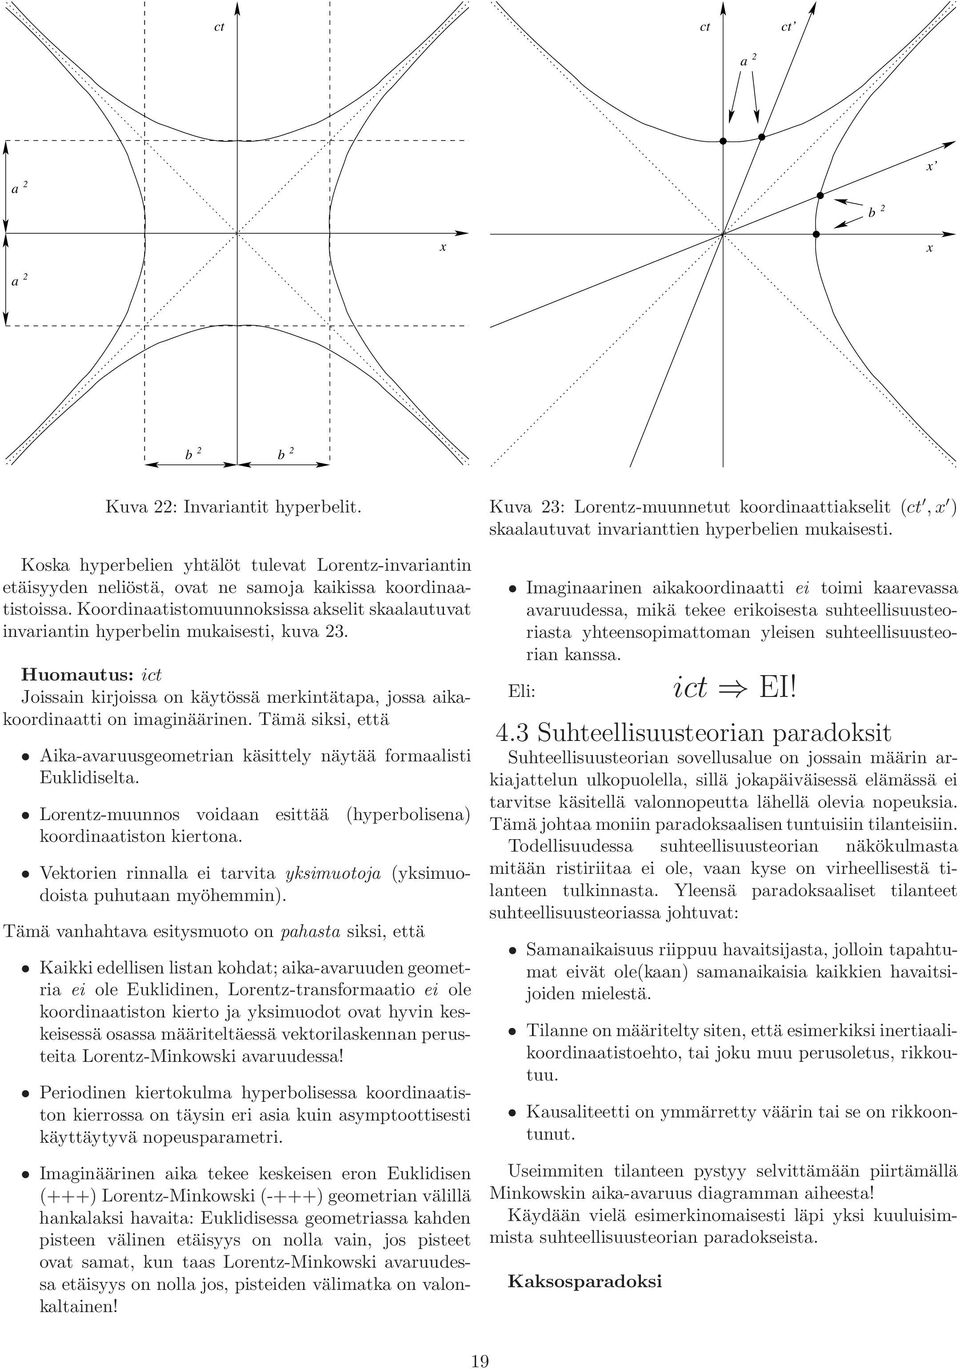 Tämä siksi, että Aika-avaruusgeometrian käsittely näytää formaalisti Euklidiselta. Lorentz-muunnos voidaan esittää (hyperbolisena) koordinaatiston kiertona.